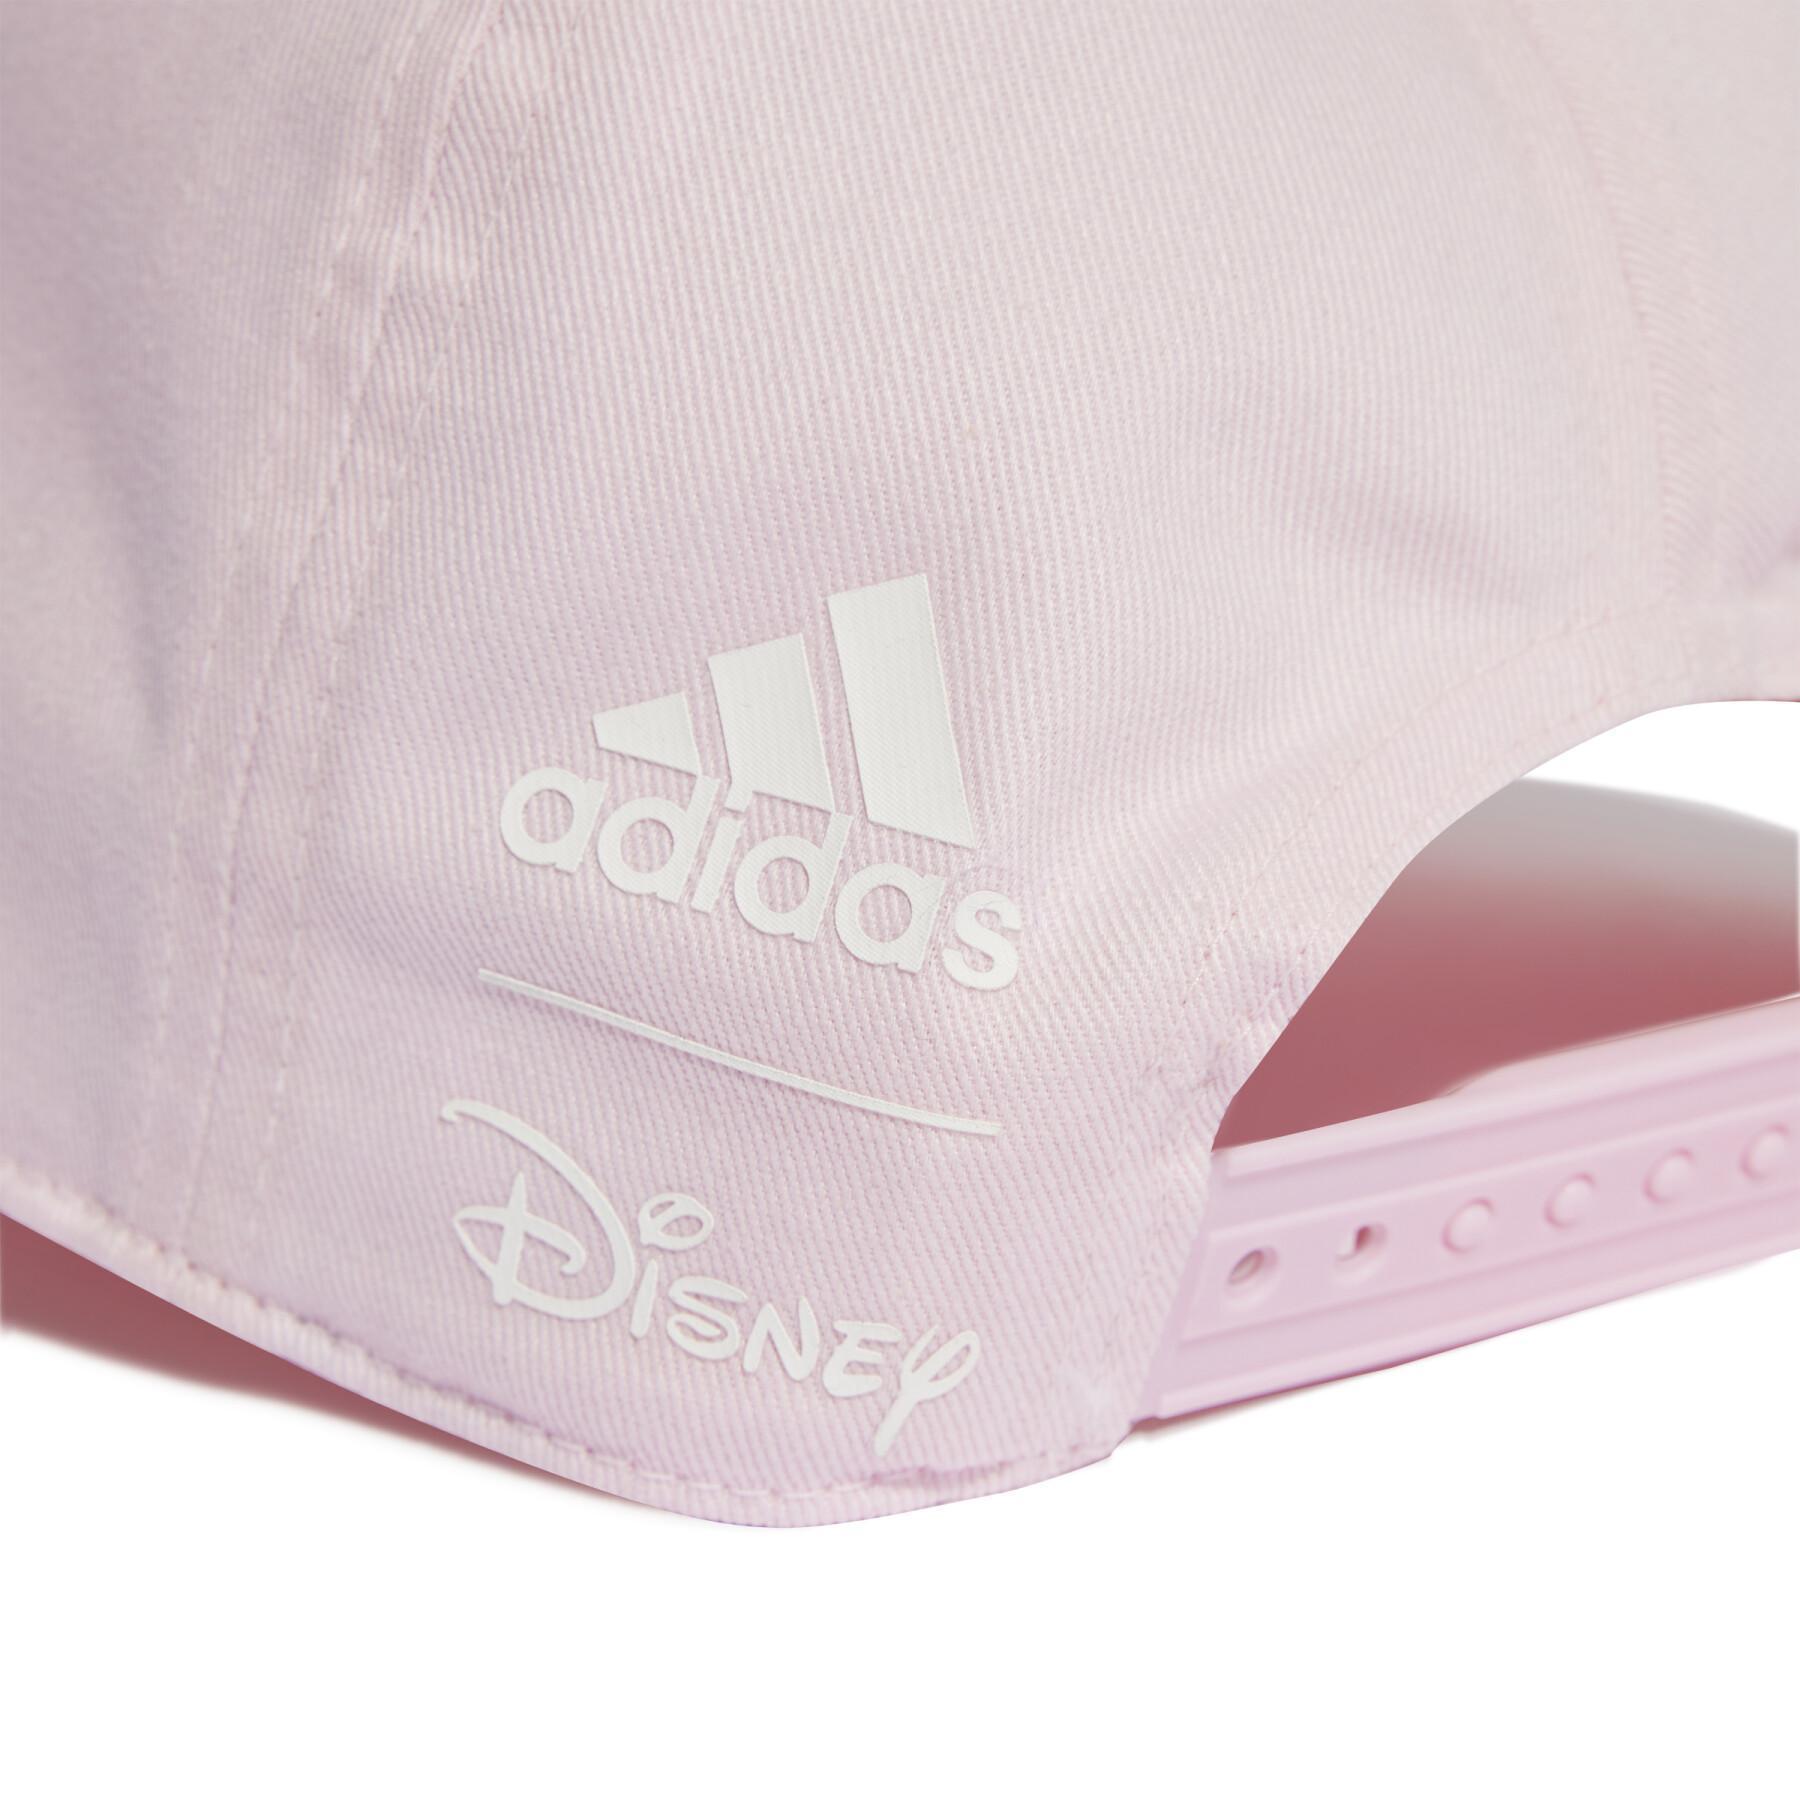 Women's cap adidas Disney Moana